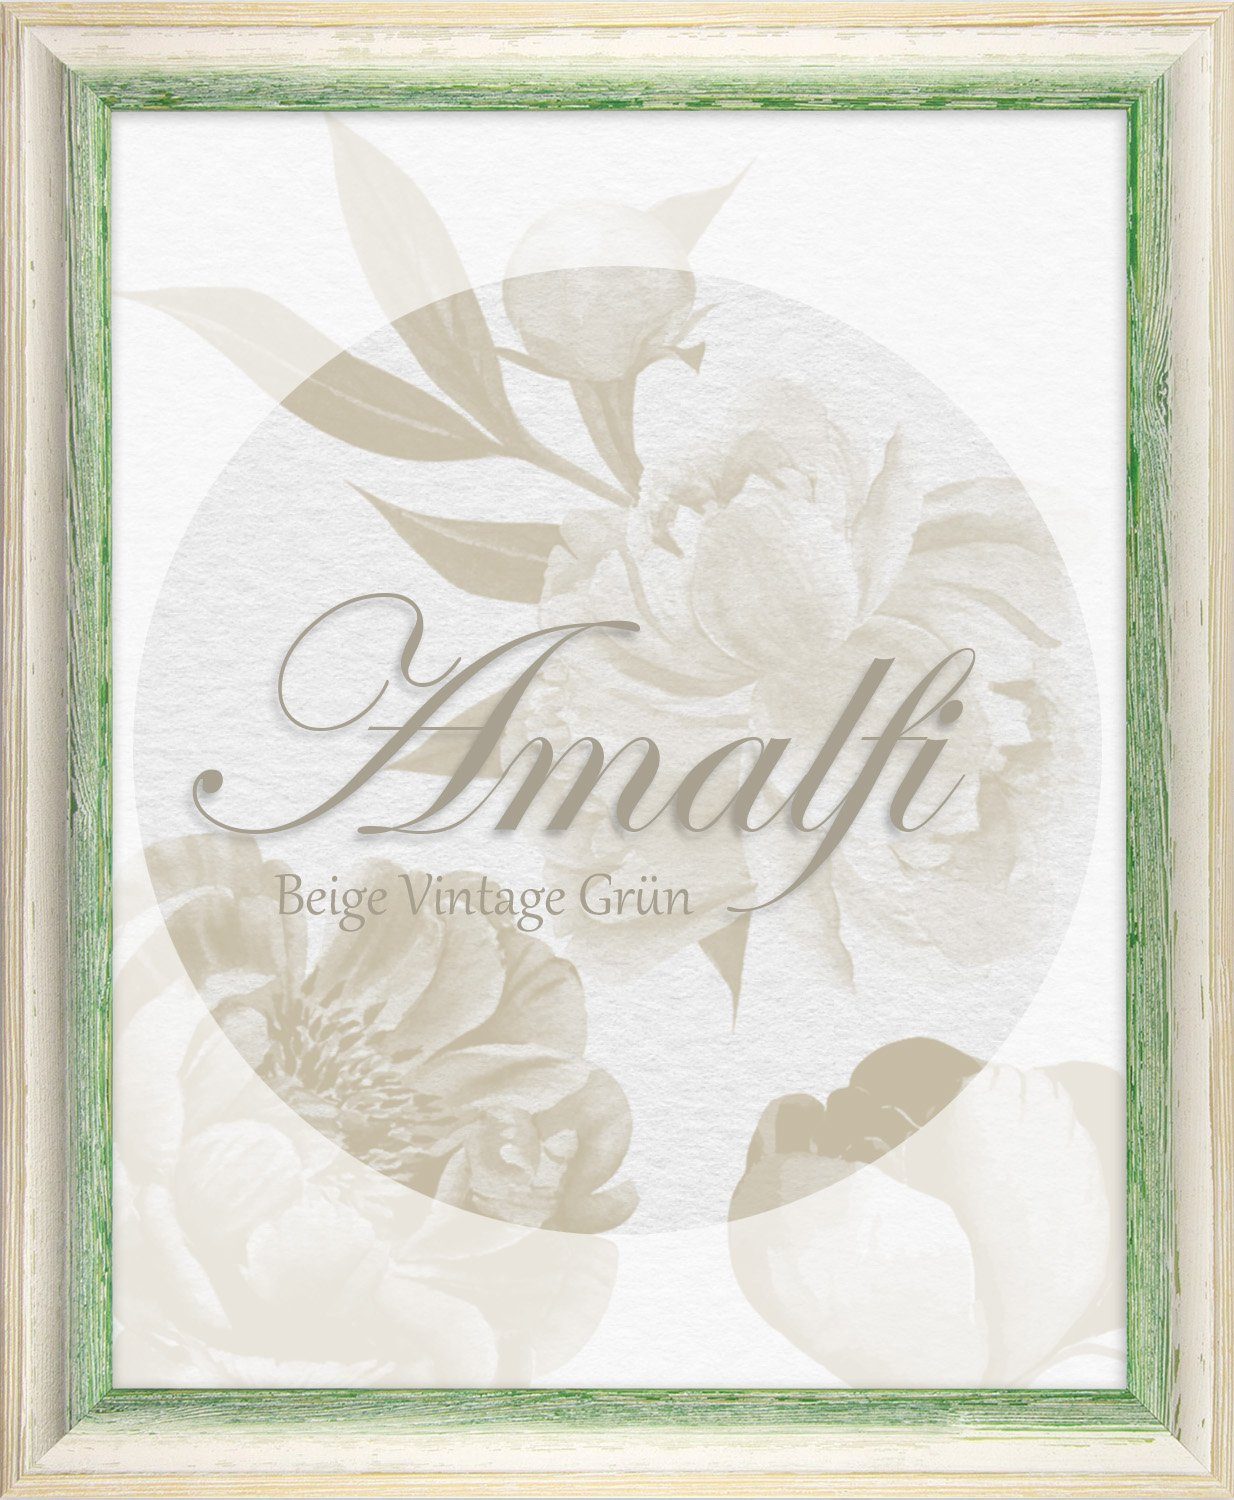 BIRAPA Einzelrahmen Bilderrahmen Amalfi, (1 Stück), 20x20 cm, Grün Weiß Vintage, Holz | Einzelrahmen